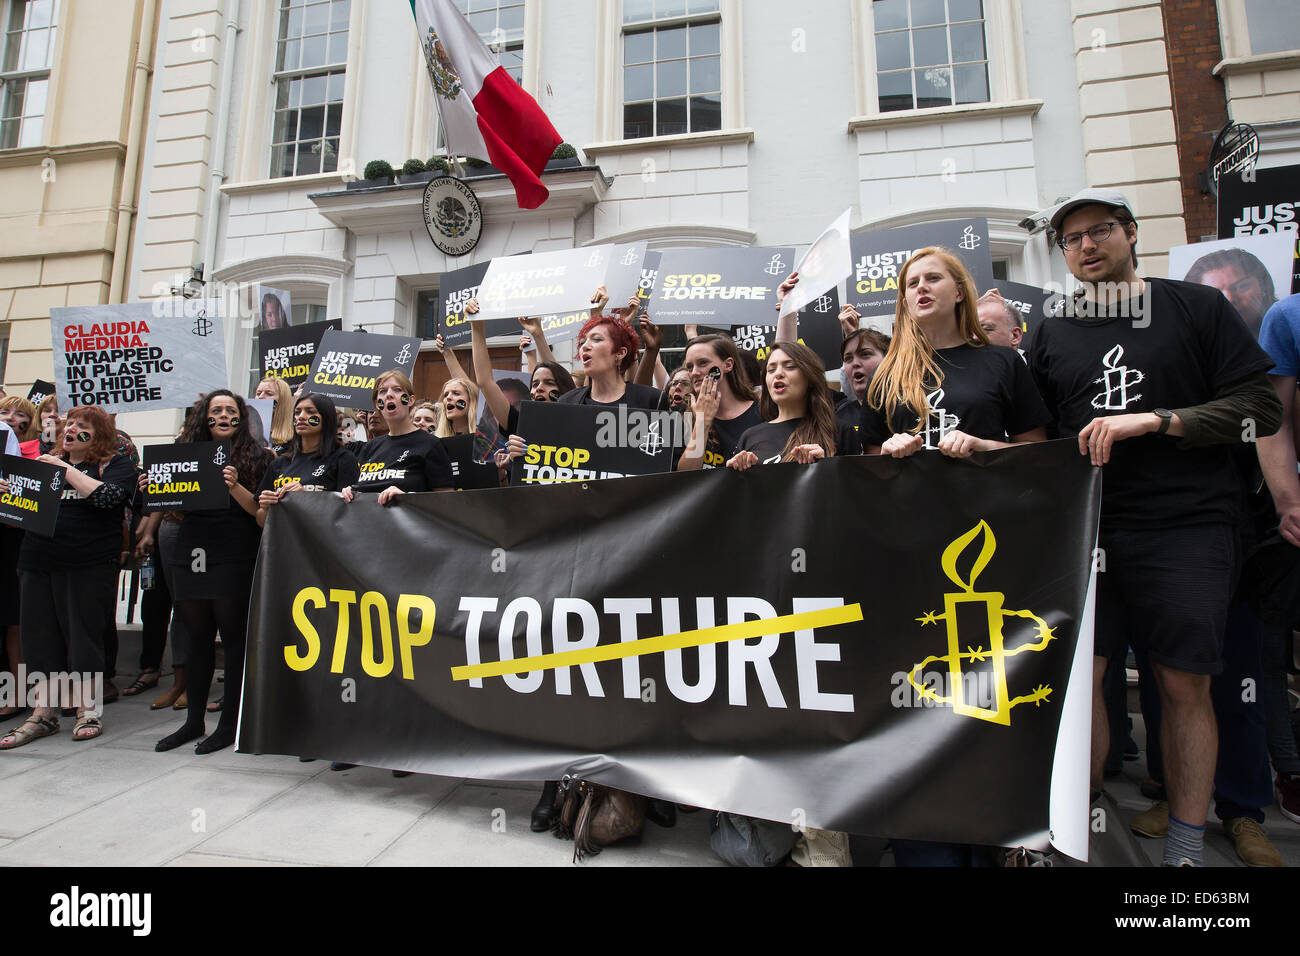 Amnesty International ont organisé une manifestation contre la torture au Mexique. Les manifestants eux-mêmes emballés dans l'ambassade du Mexique à l'extérieur de Ziploc® à Londres pour mettre en évidence le traitement de Claudia Medina, Tamariz qui a été prise d'une base navale par marines puis battu, Banque D'Images